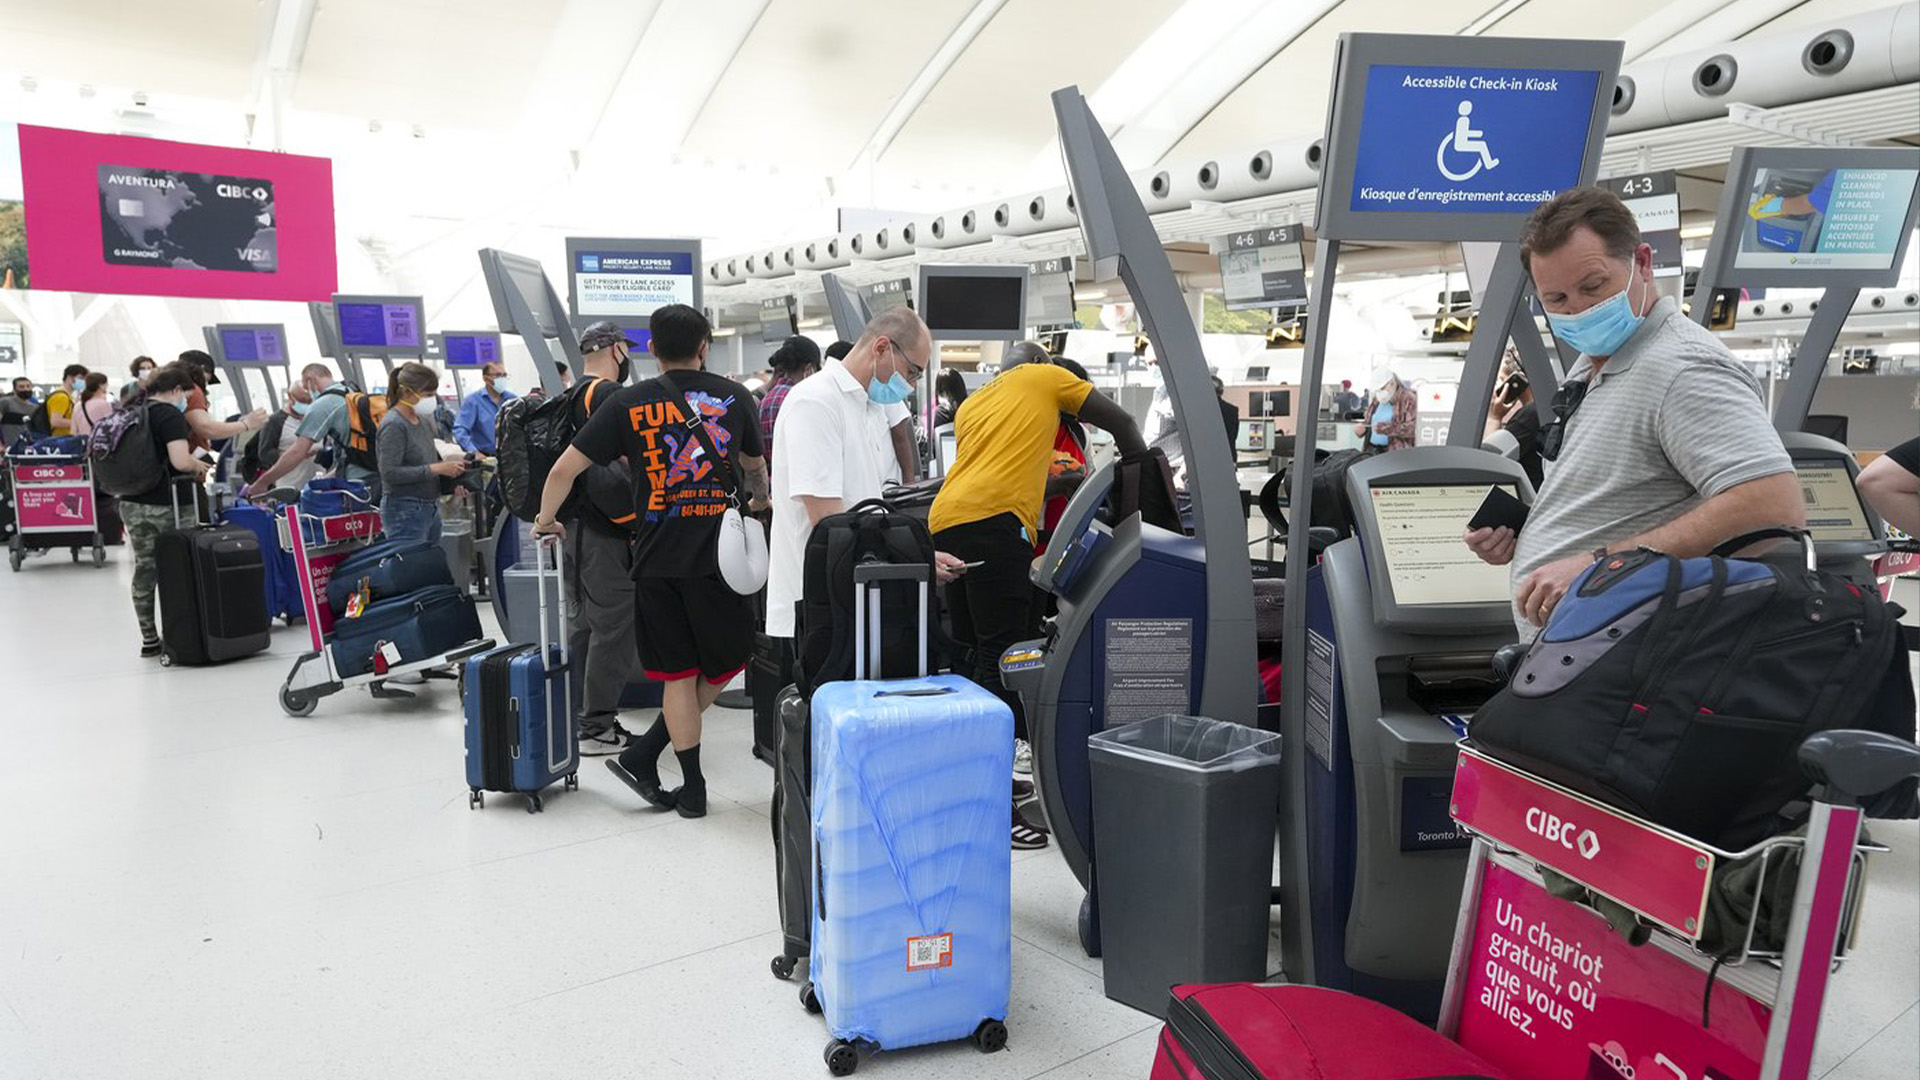 Les gens font la queue pour s'enregistrer à l'aéroport international Pearson de Toronto le jeudi 12 mai 2022. Les voyageurs canadiens font face à une augmentation des frais d'aéroport après que la pandémie ait anéanti les revenus et entraîné une accumulation de dettes pour les aéroports à travers le pays.